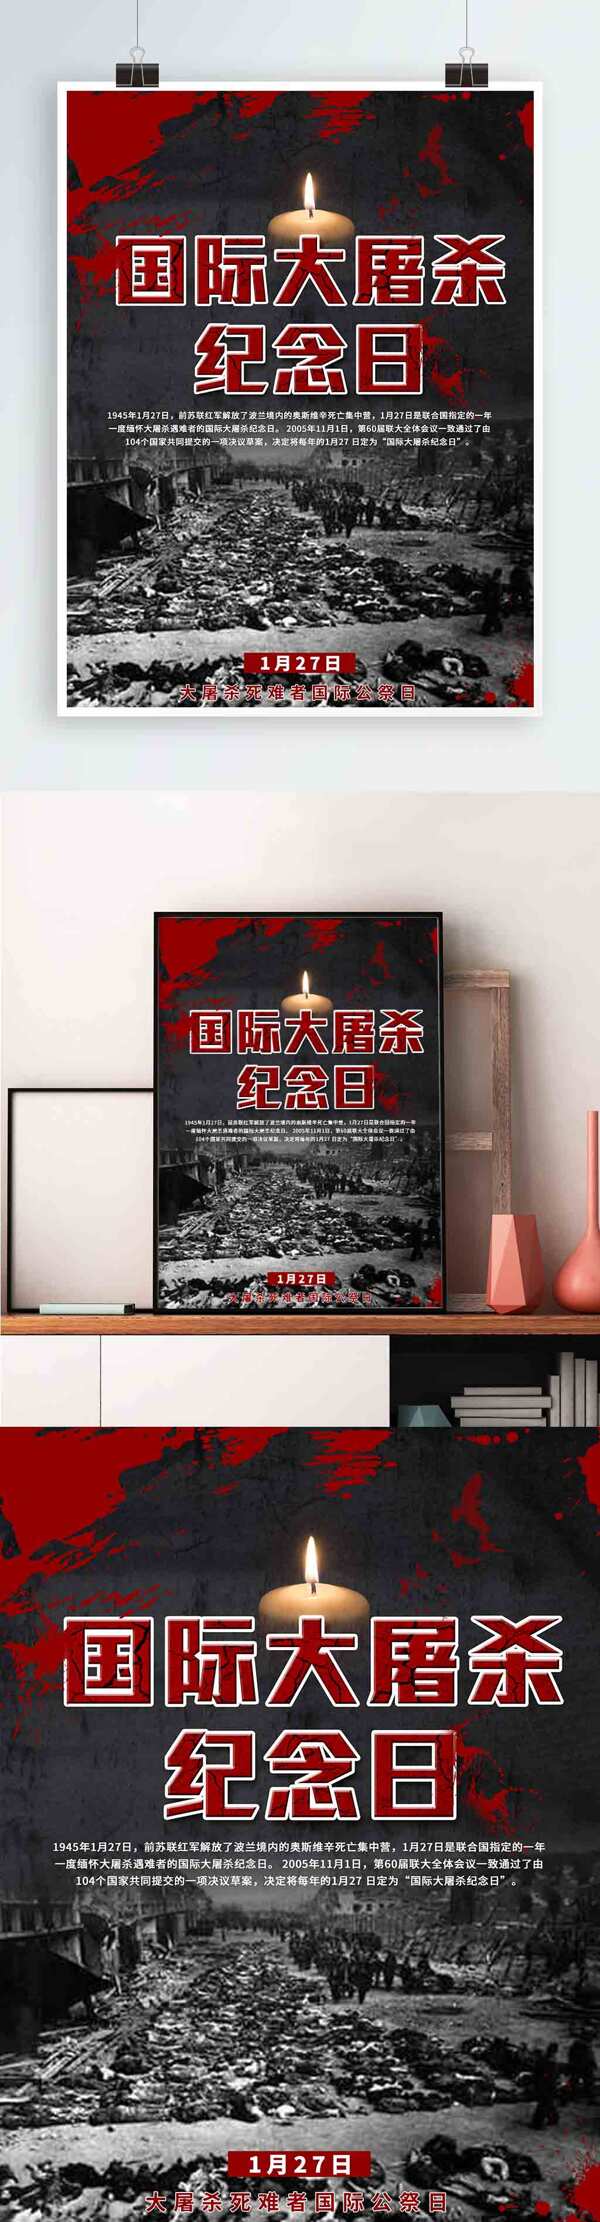 国际大屠杀纪念日黑红色变形字海报PS模板